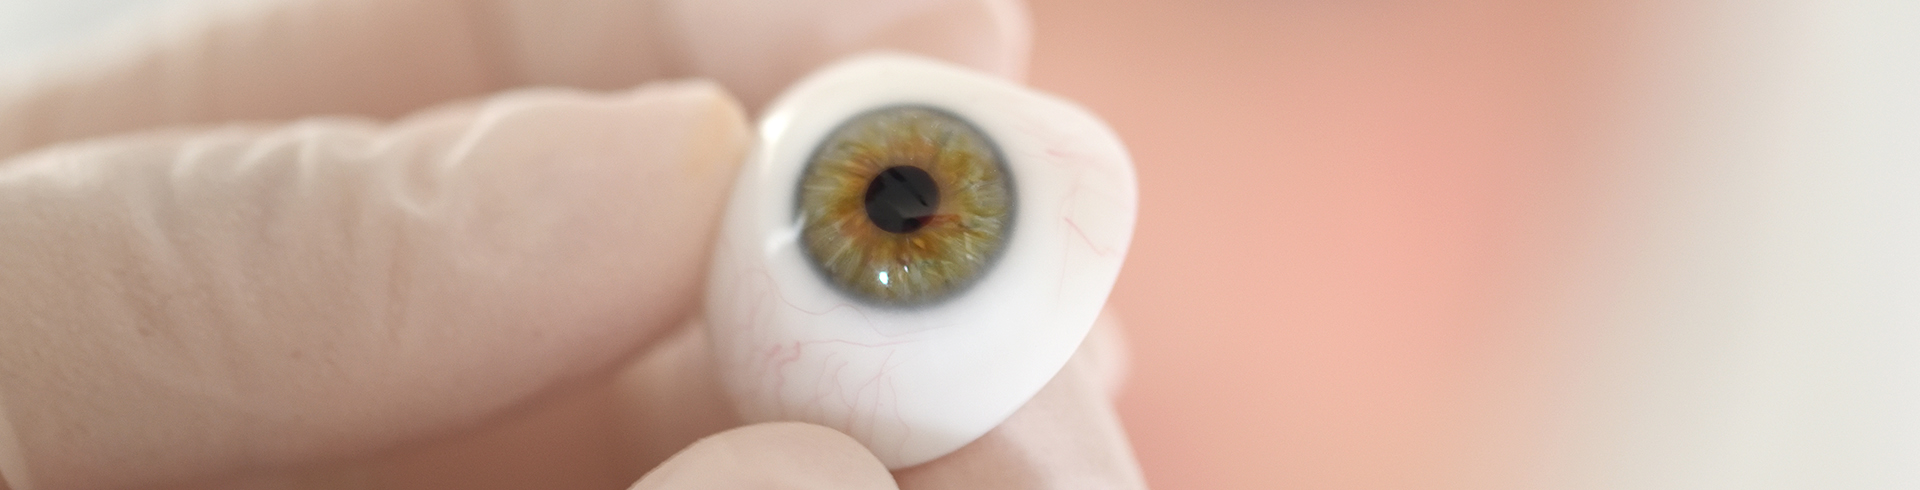 Protesi Oculare vetro Cryolite - ETM CENTRO VISIONE